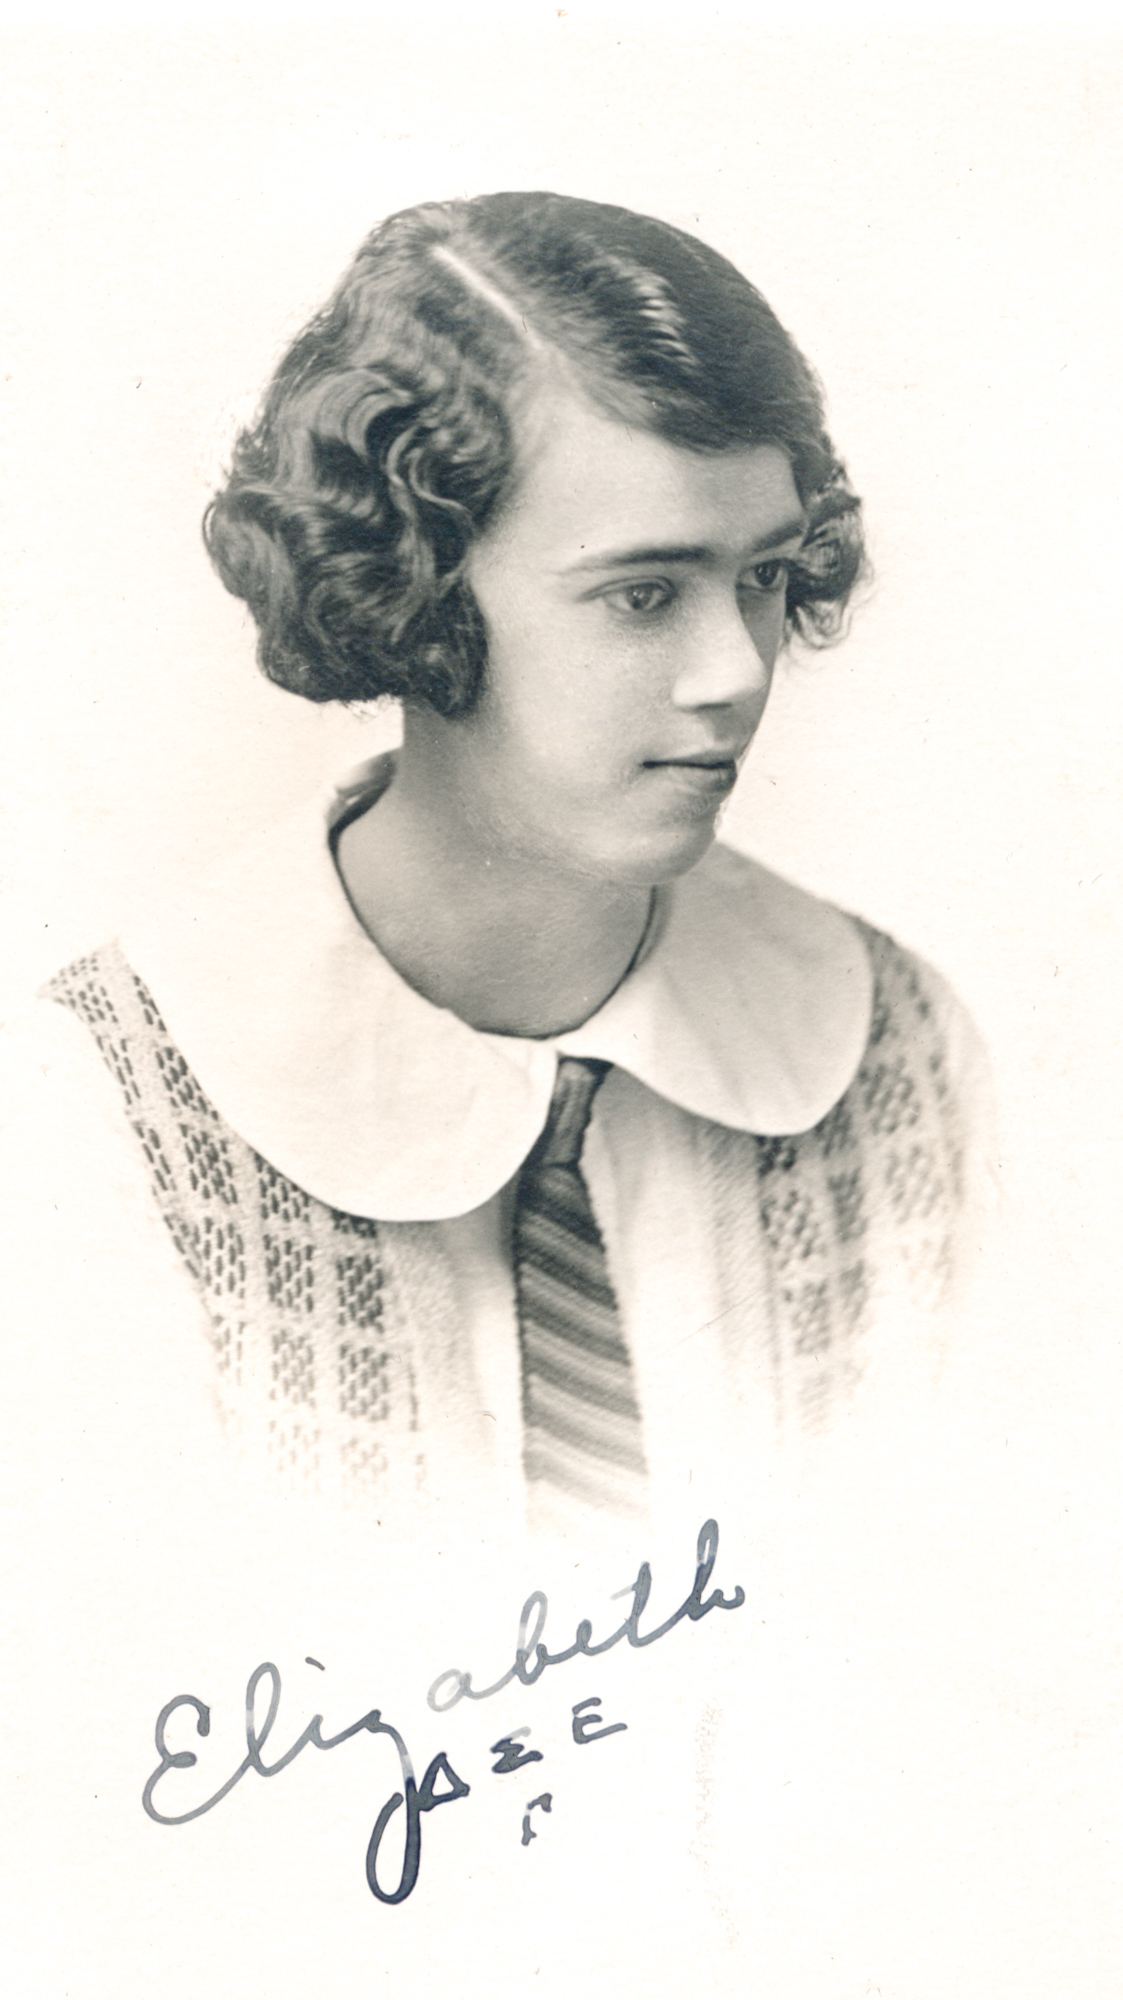 Dauth Family Archive - Circa 1924 - Elizabeth Dauth College Photo